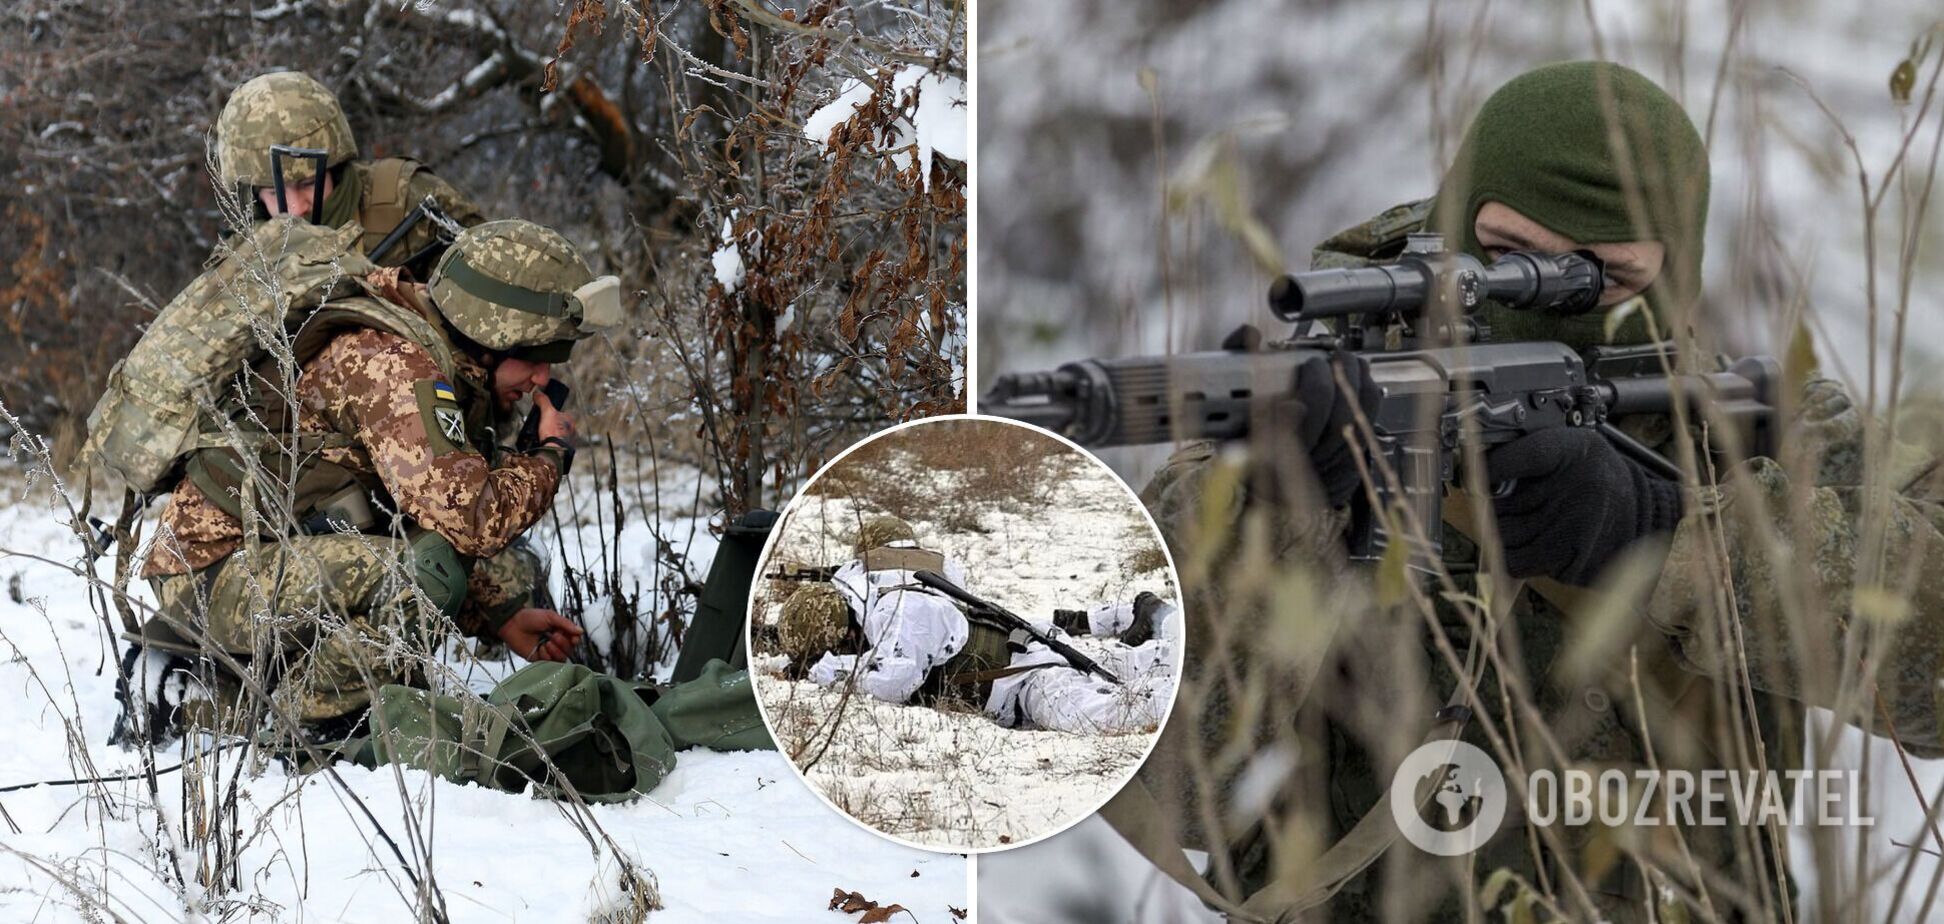 Окупанти обстріляли ЗСУ на Донбасі, загинув український військовий – штаб ООС